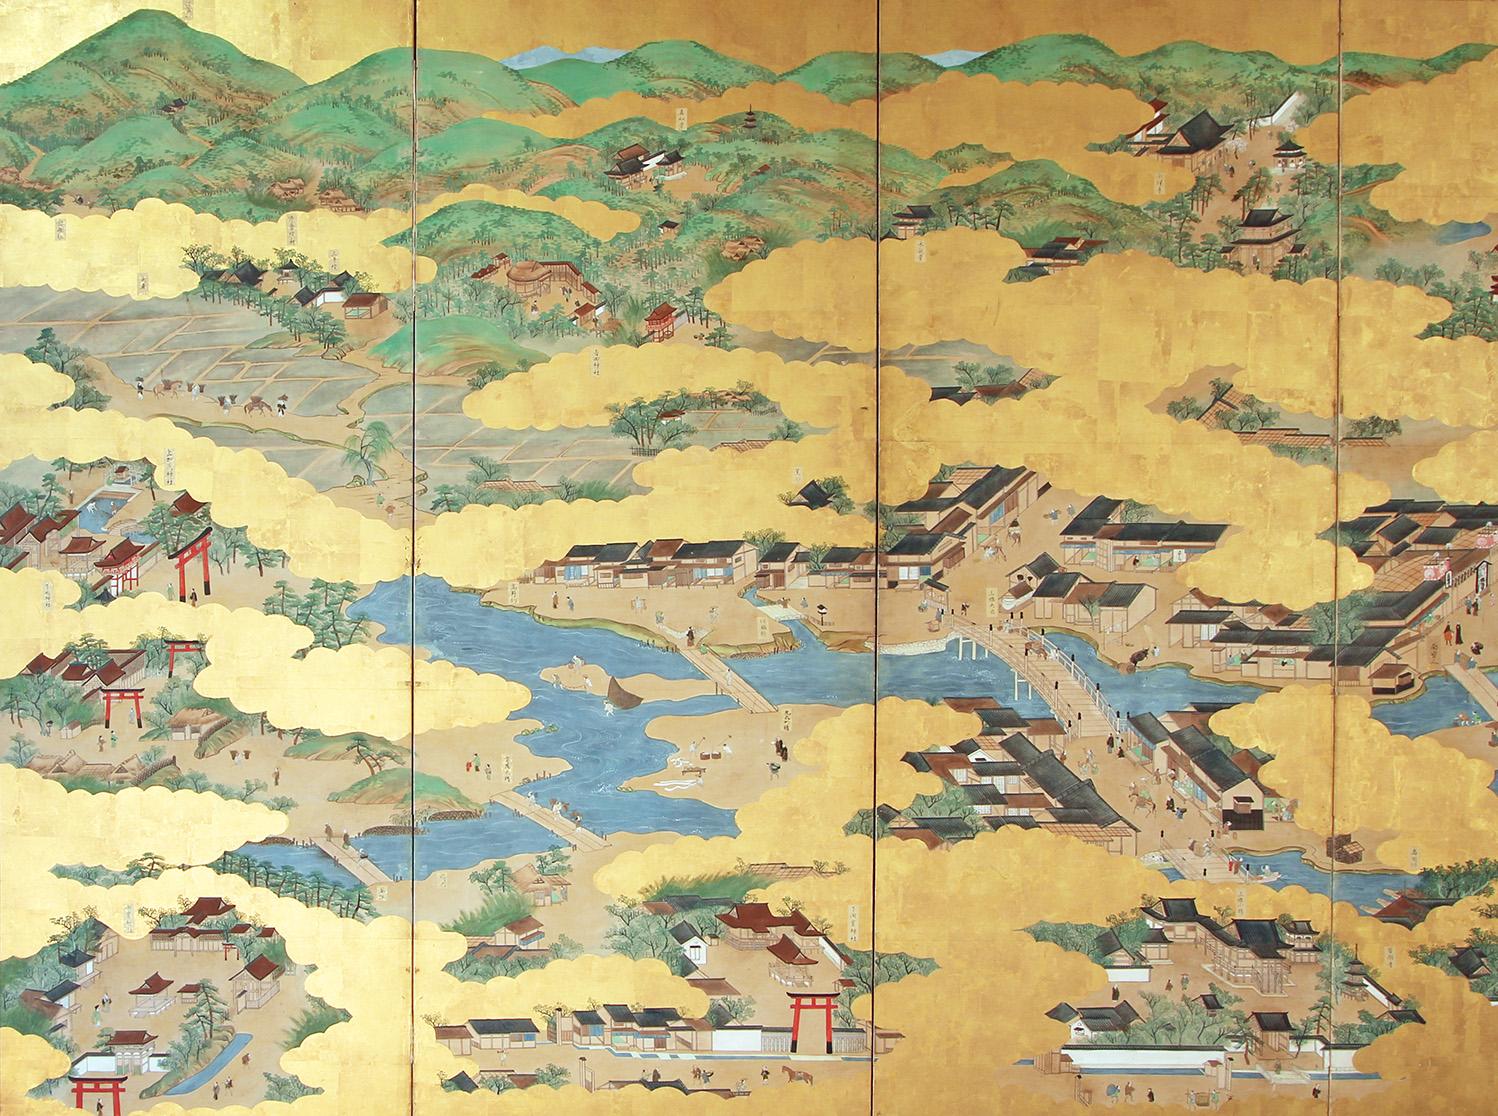 Del periodo Edo questo grande paravento giapponese che riproduce l'antica città di Kyoto e i suoi sobborghi.
Dipinto con inchiostri e pigmenti minerali, fin nei minimi dettagli su carta di riso e foglia d'oro zecchino, questo paravento 